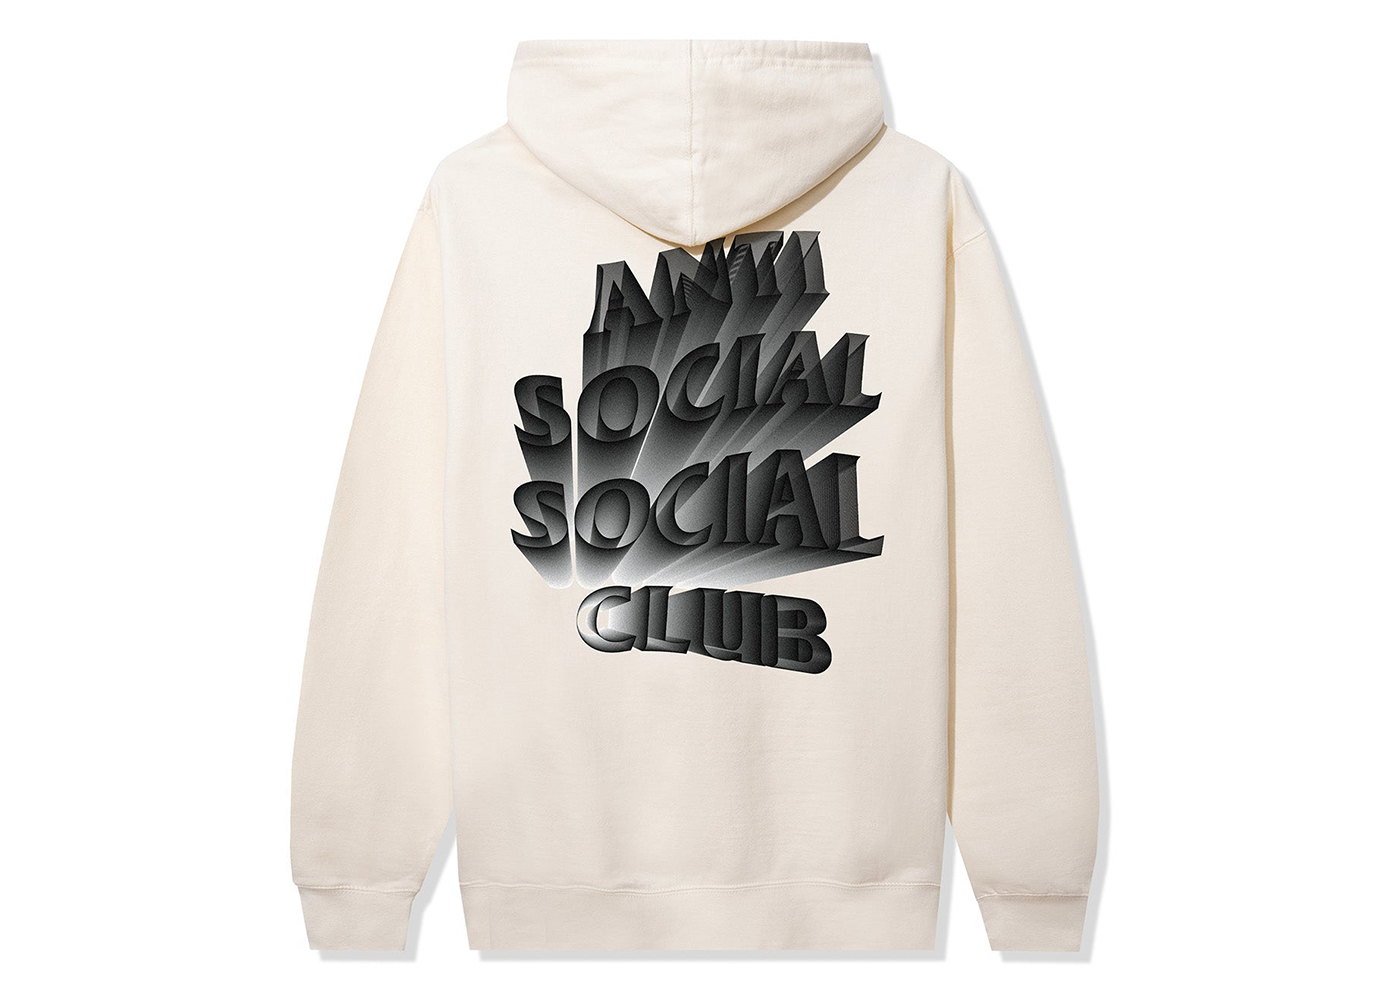 【セール国産】anti social social club MIRAGE HOOD パーカー